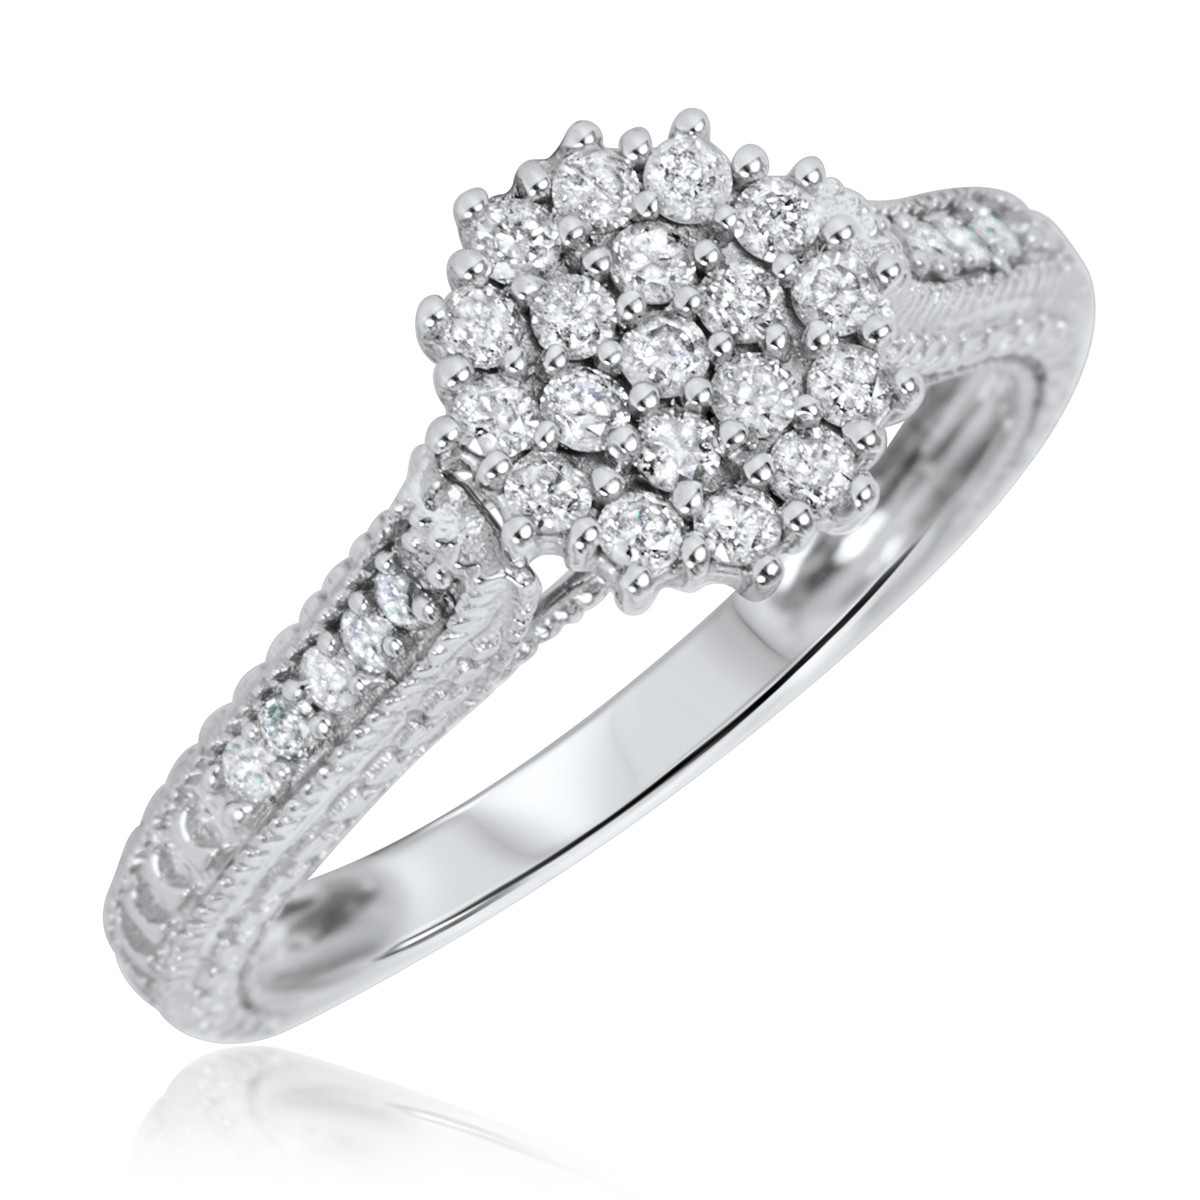 White Gold Diamond Rings For Women
 1 2 Carat T W Diamond Women s Engagement Ring 14K White